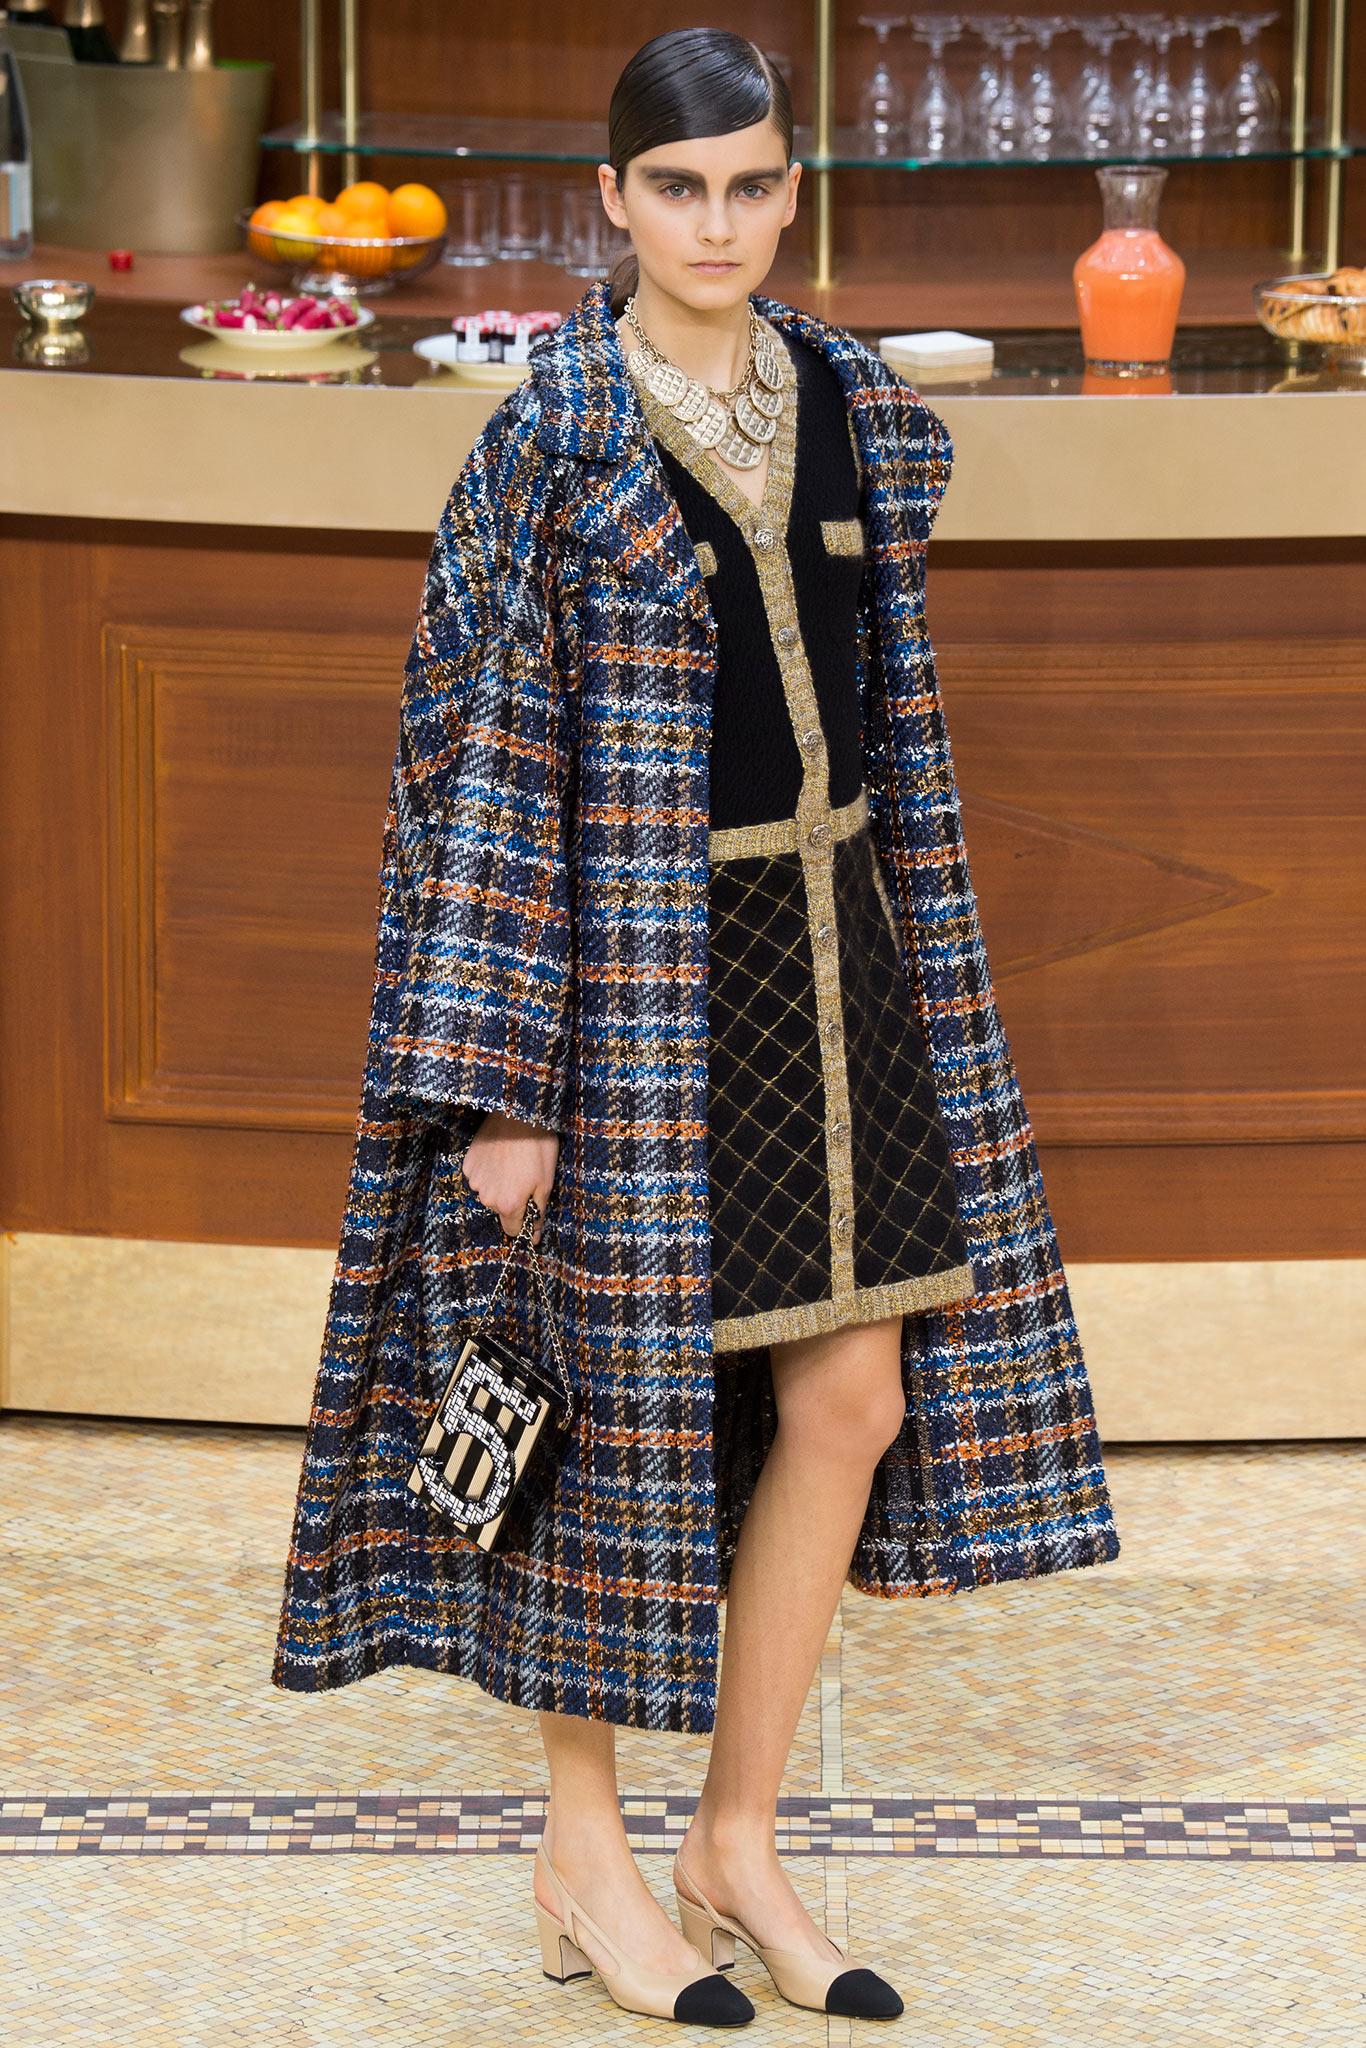 Super célèbre et rare veste/robe Chanel de la ''Coco Brasserie'' 2015 Fall collection, Retail price 8,870$. Vu dans la campagne publicitaire de Chanel, dans de nombreux magazines. Icone et reconnaissable. 
Marque de taille 40 fr. 
✨ boutons en forme